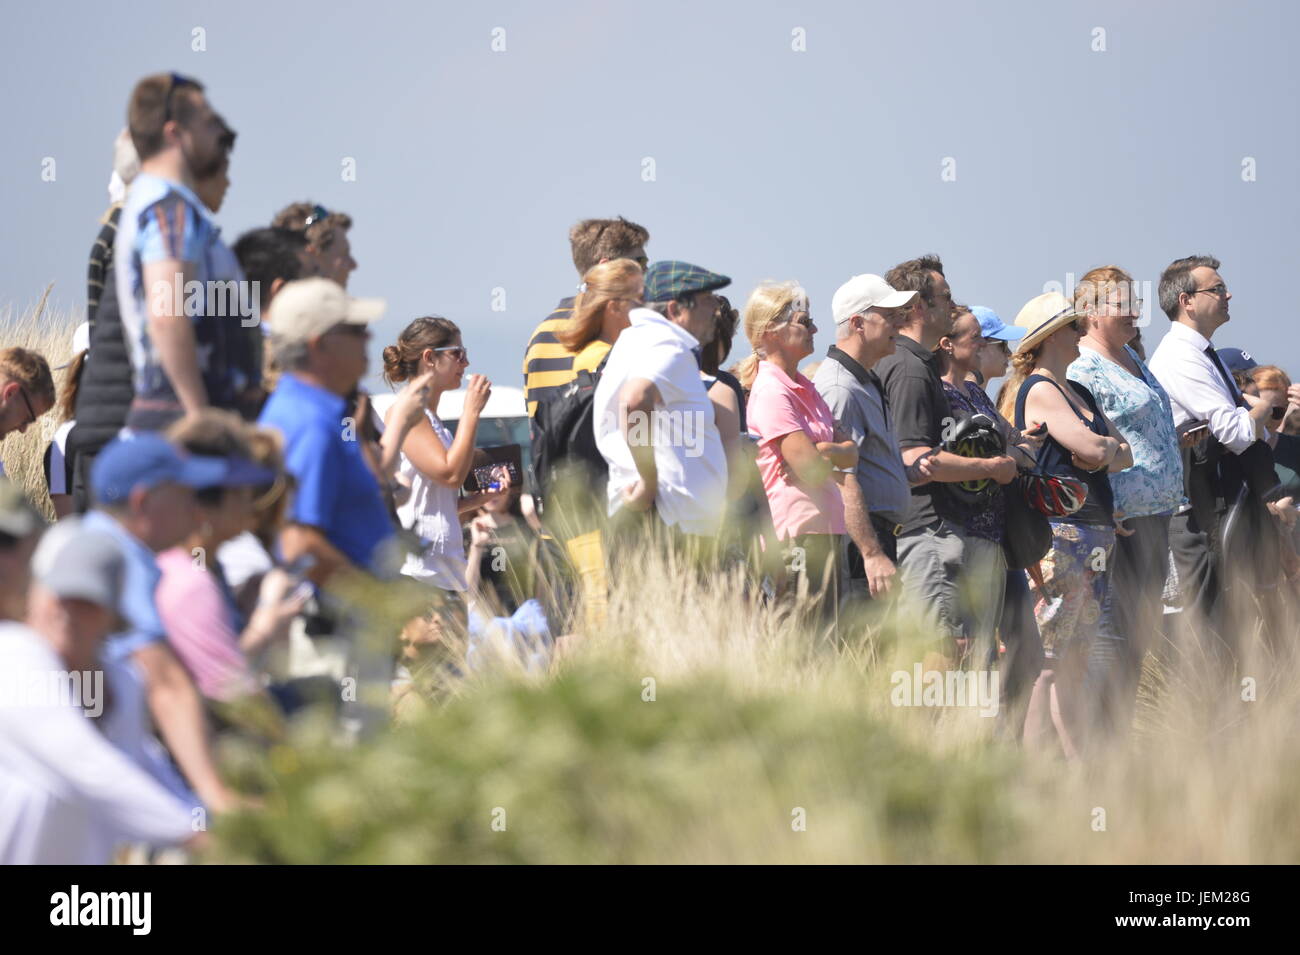 Les badauds regarder l'ancien président des États-Unis, Barack Obama, de jouer une partie de golf sur le Old Course à St Andrews, sur la côte est de Fife en Ecosse. Où : St Andrews, Fife, Royaume-Uni Quand : 26 mai 2017 Banque D'Images